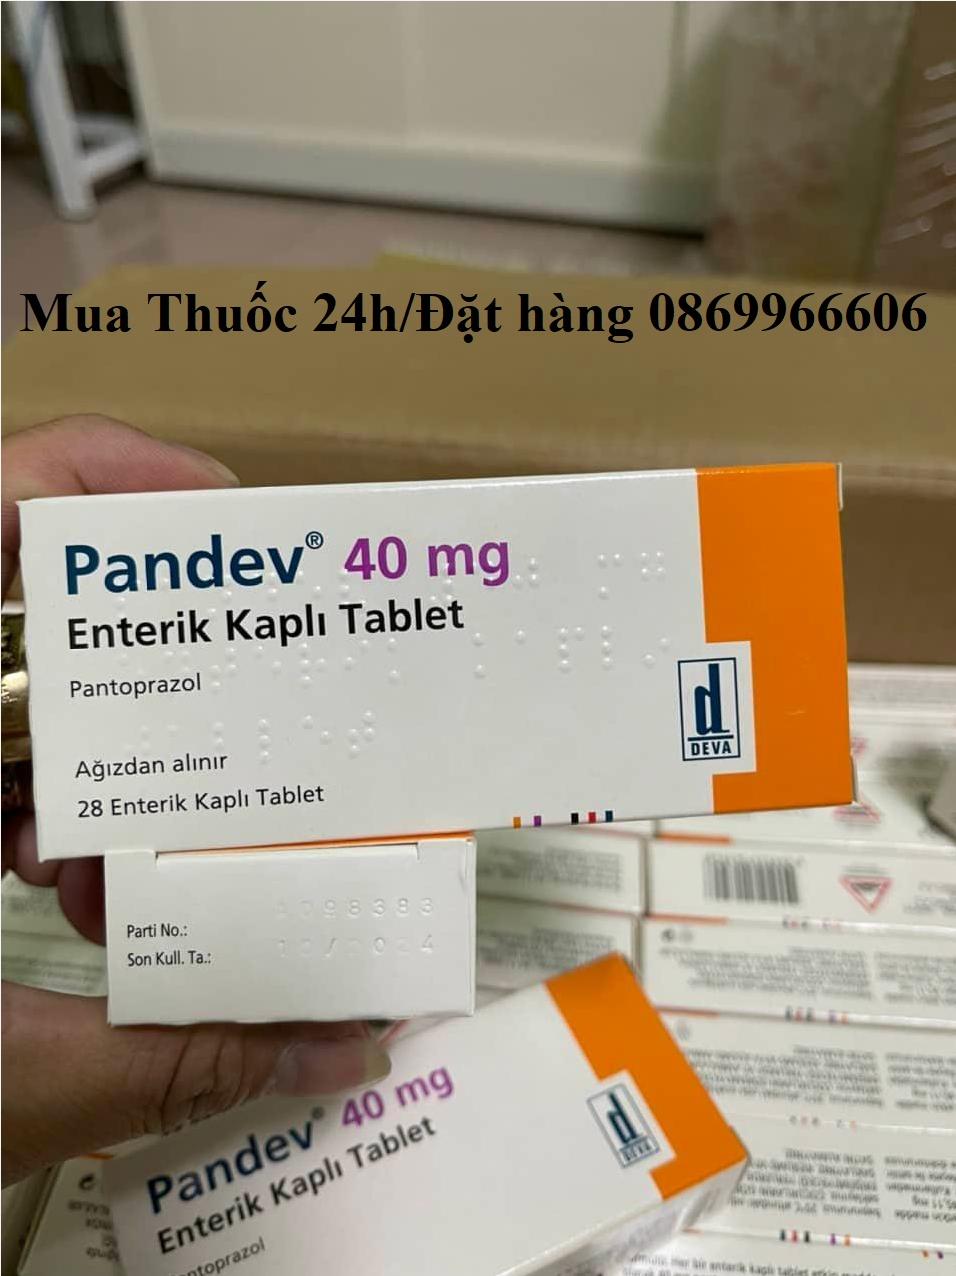 Thuốc Pandev Pantoprazol 40mg giá bao nhiêu mua ở đâu?